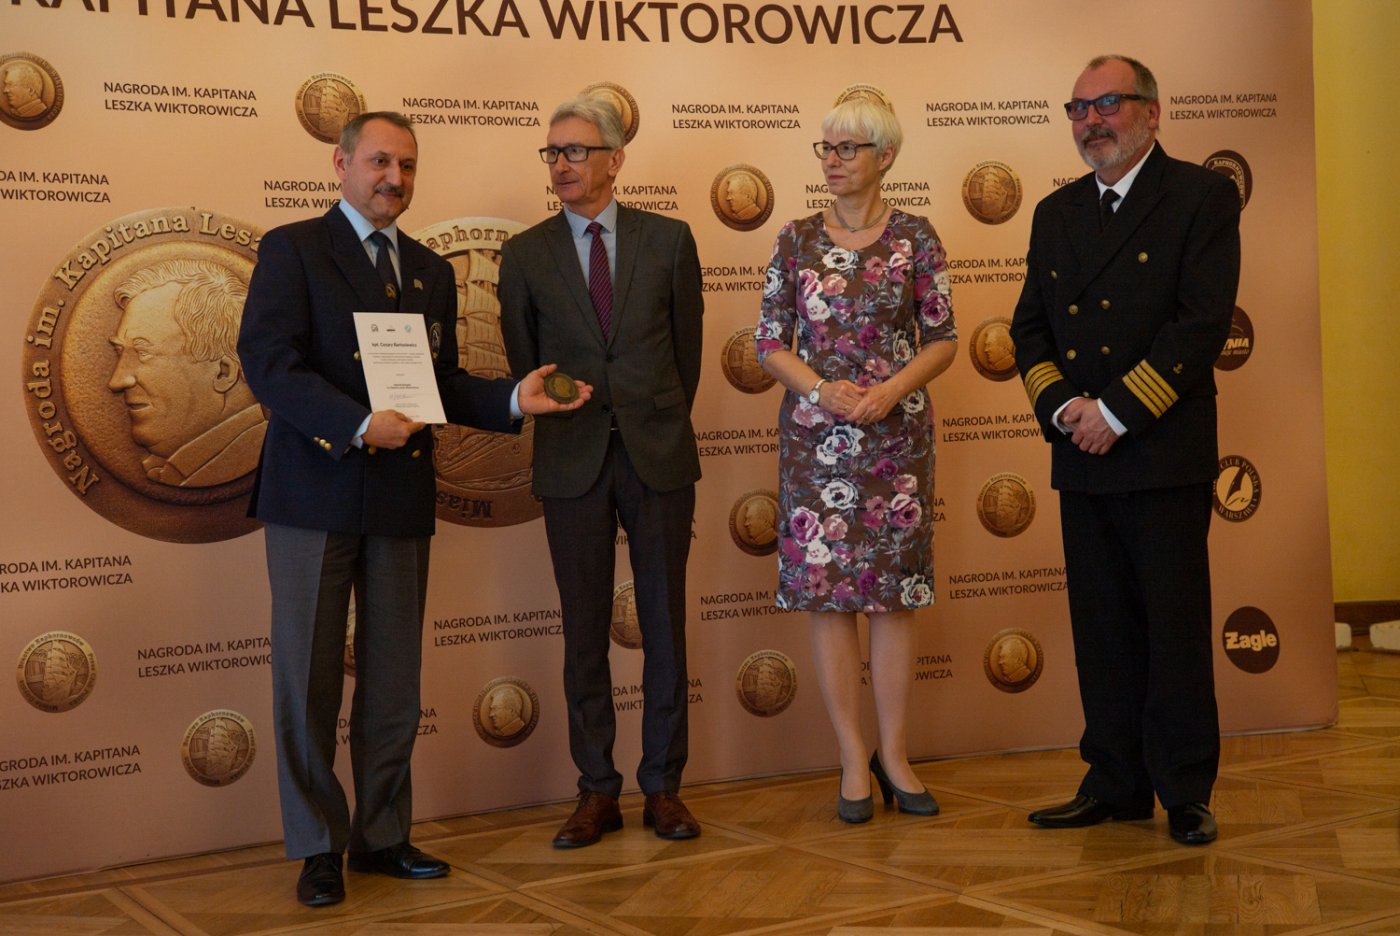 W roku 2019 nagrodę im. Kapitana Leszka Wiktorowicza otrzymał kpt. Mariusz Koper // fot. www.leszekwiktorowicz.pl.